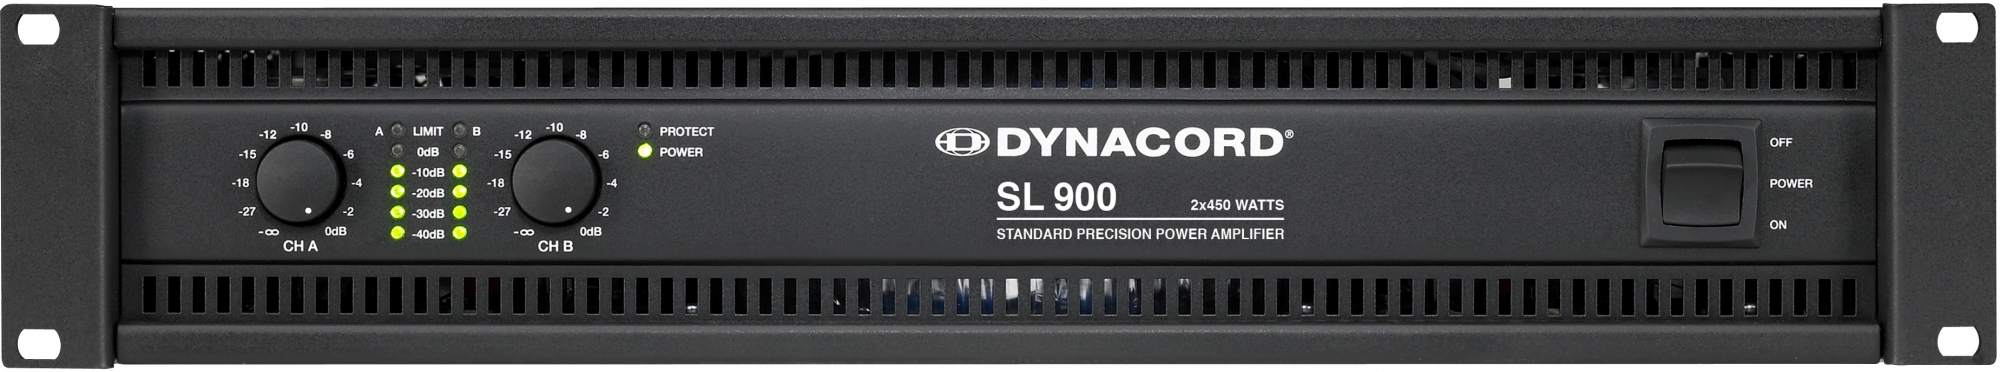 Dynacord SL 900 effektforsterker